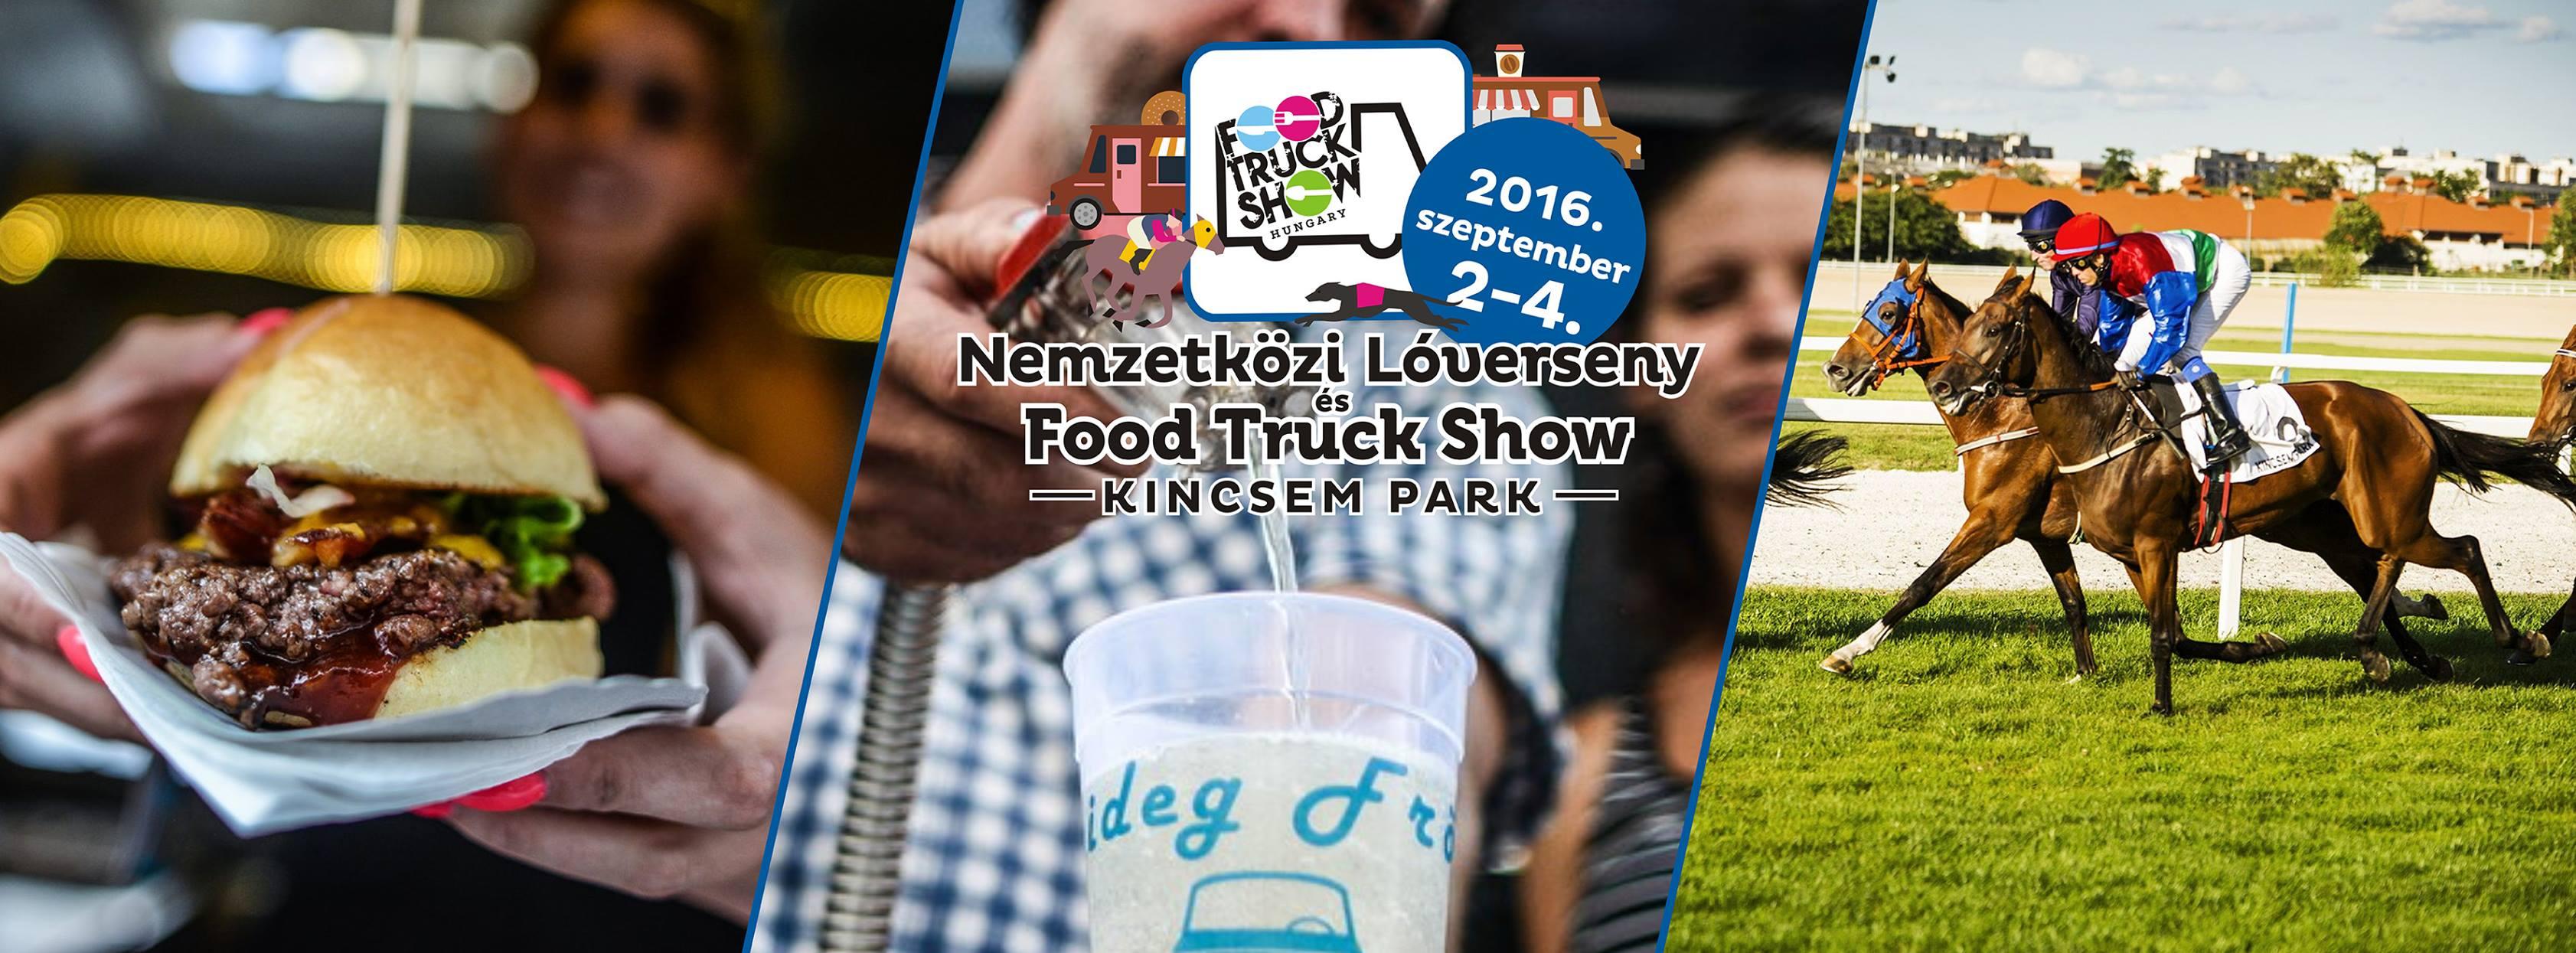 Food Truck Show, Kincsem Park, 2 - 4 September